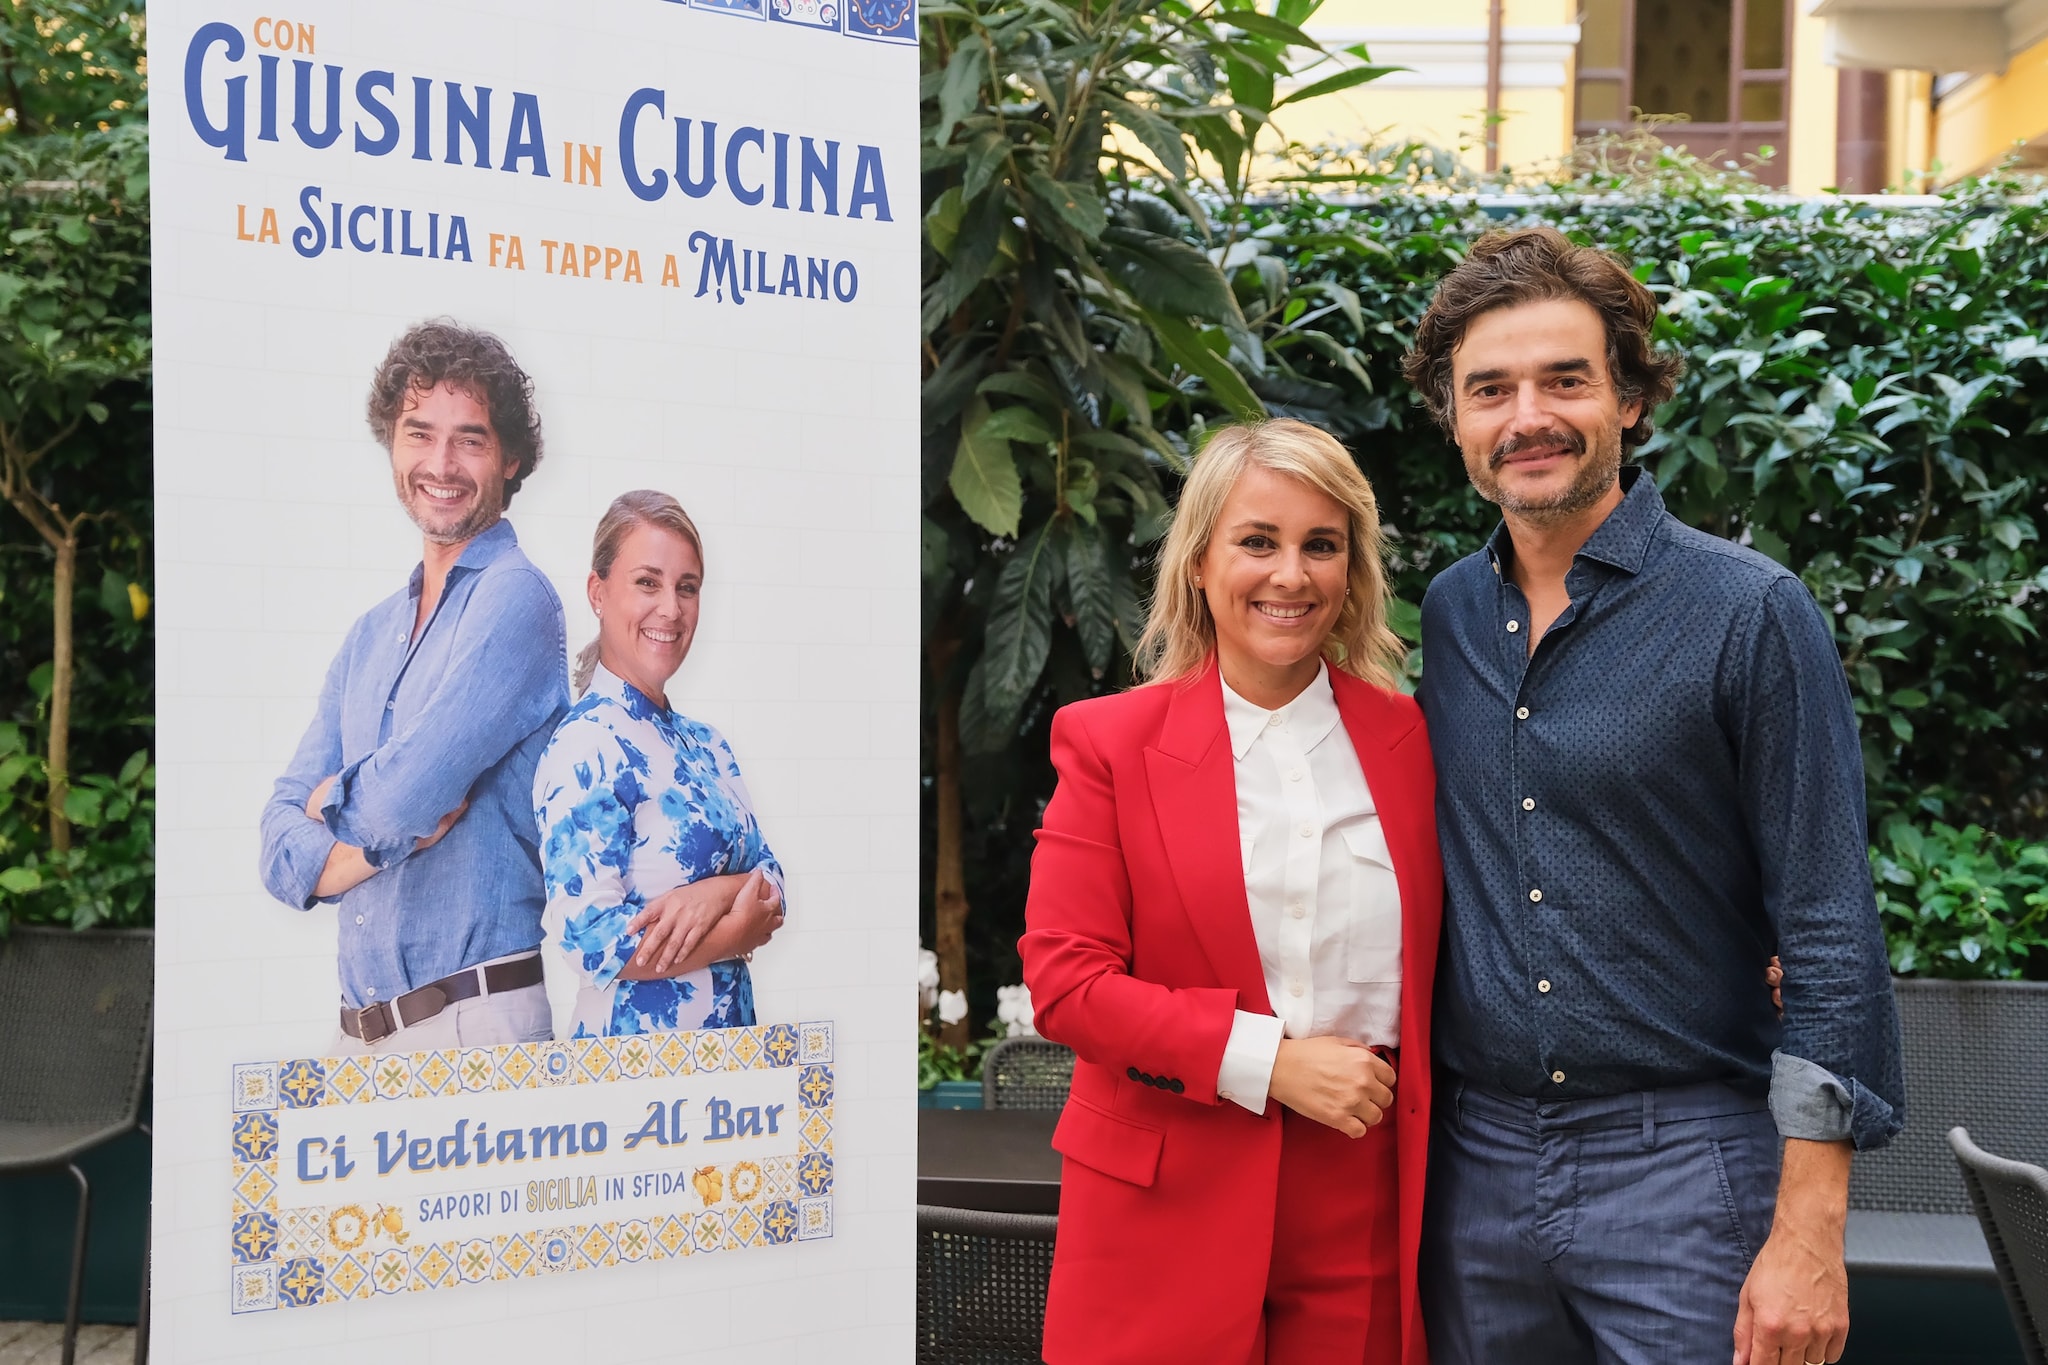 La Sicilia di Giusina in Cucina è tutta da mangiare in un nuovo libro e programma tv